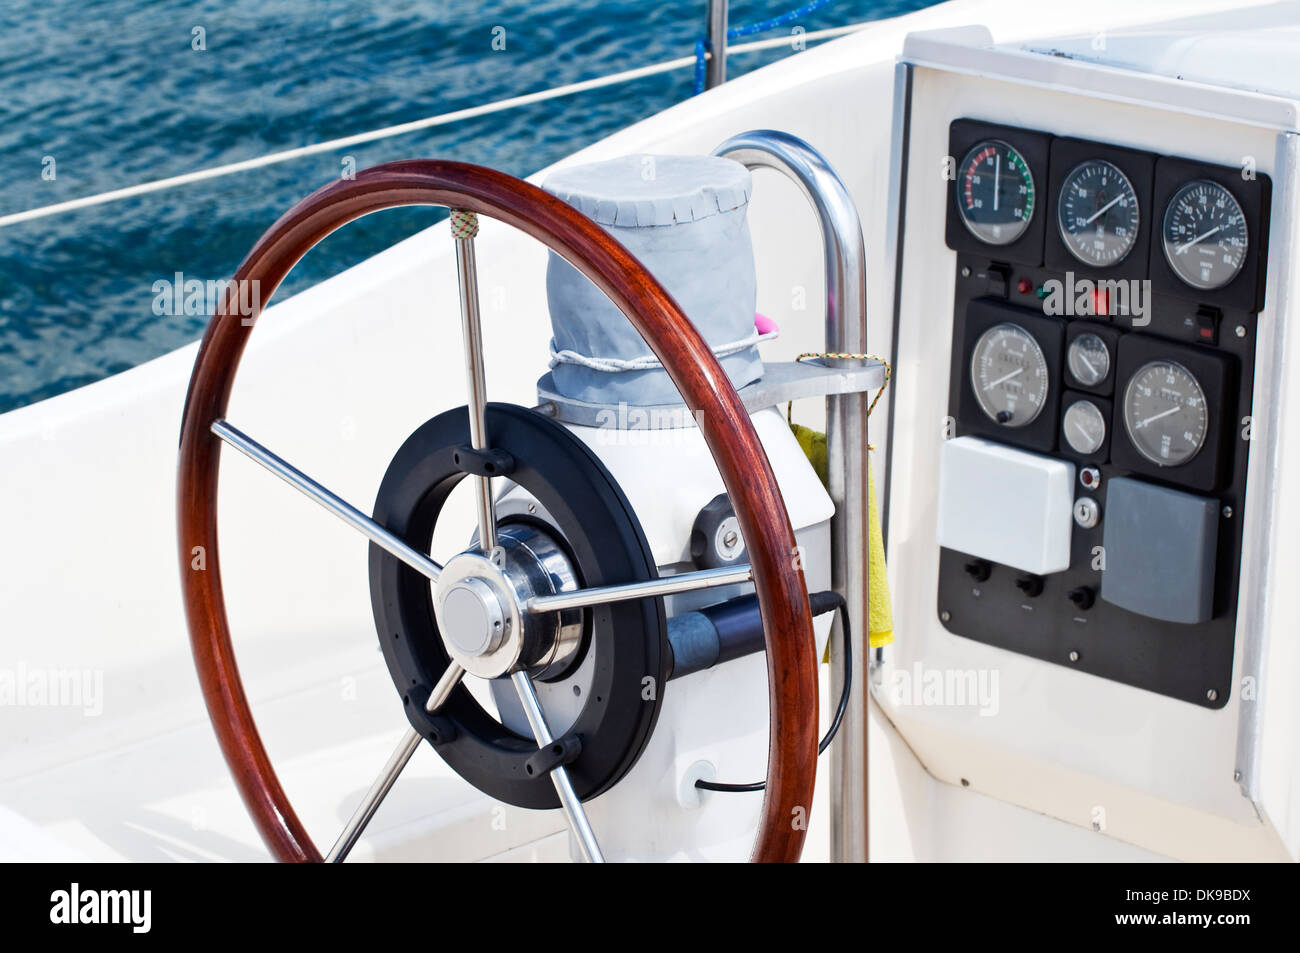 Détail de Rudder et instruments de navigation sur un voilier Banque D'Images